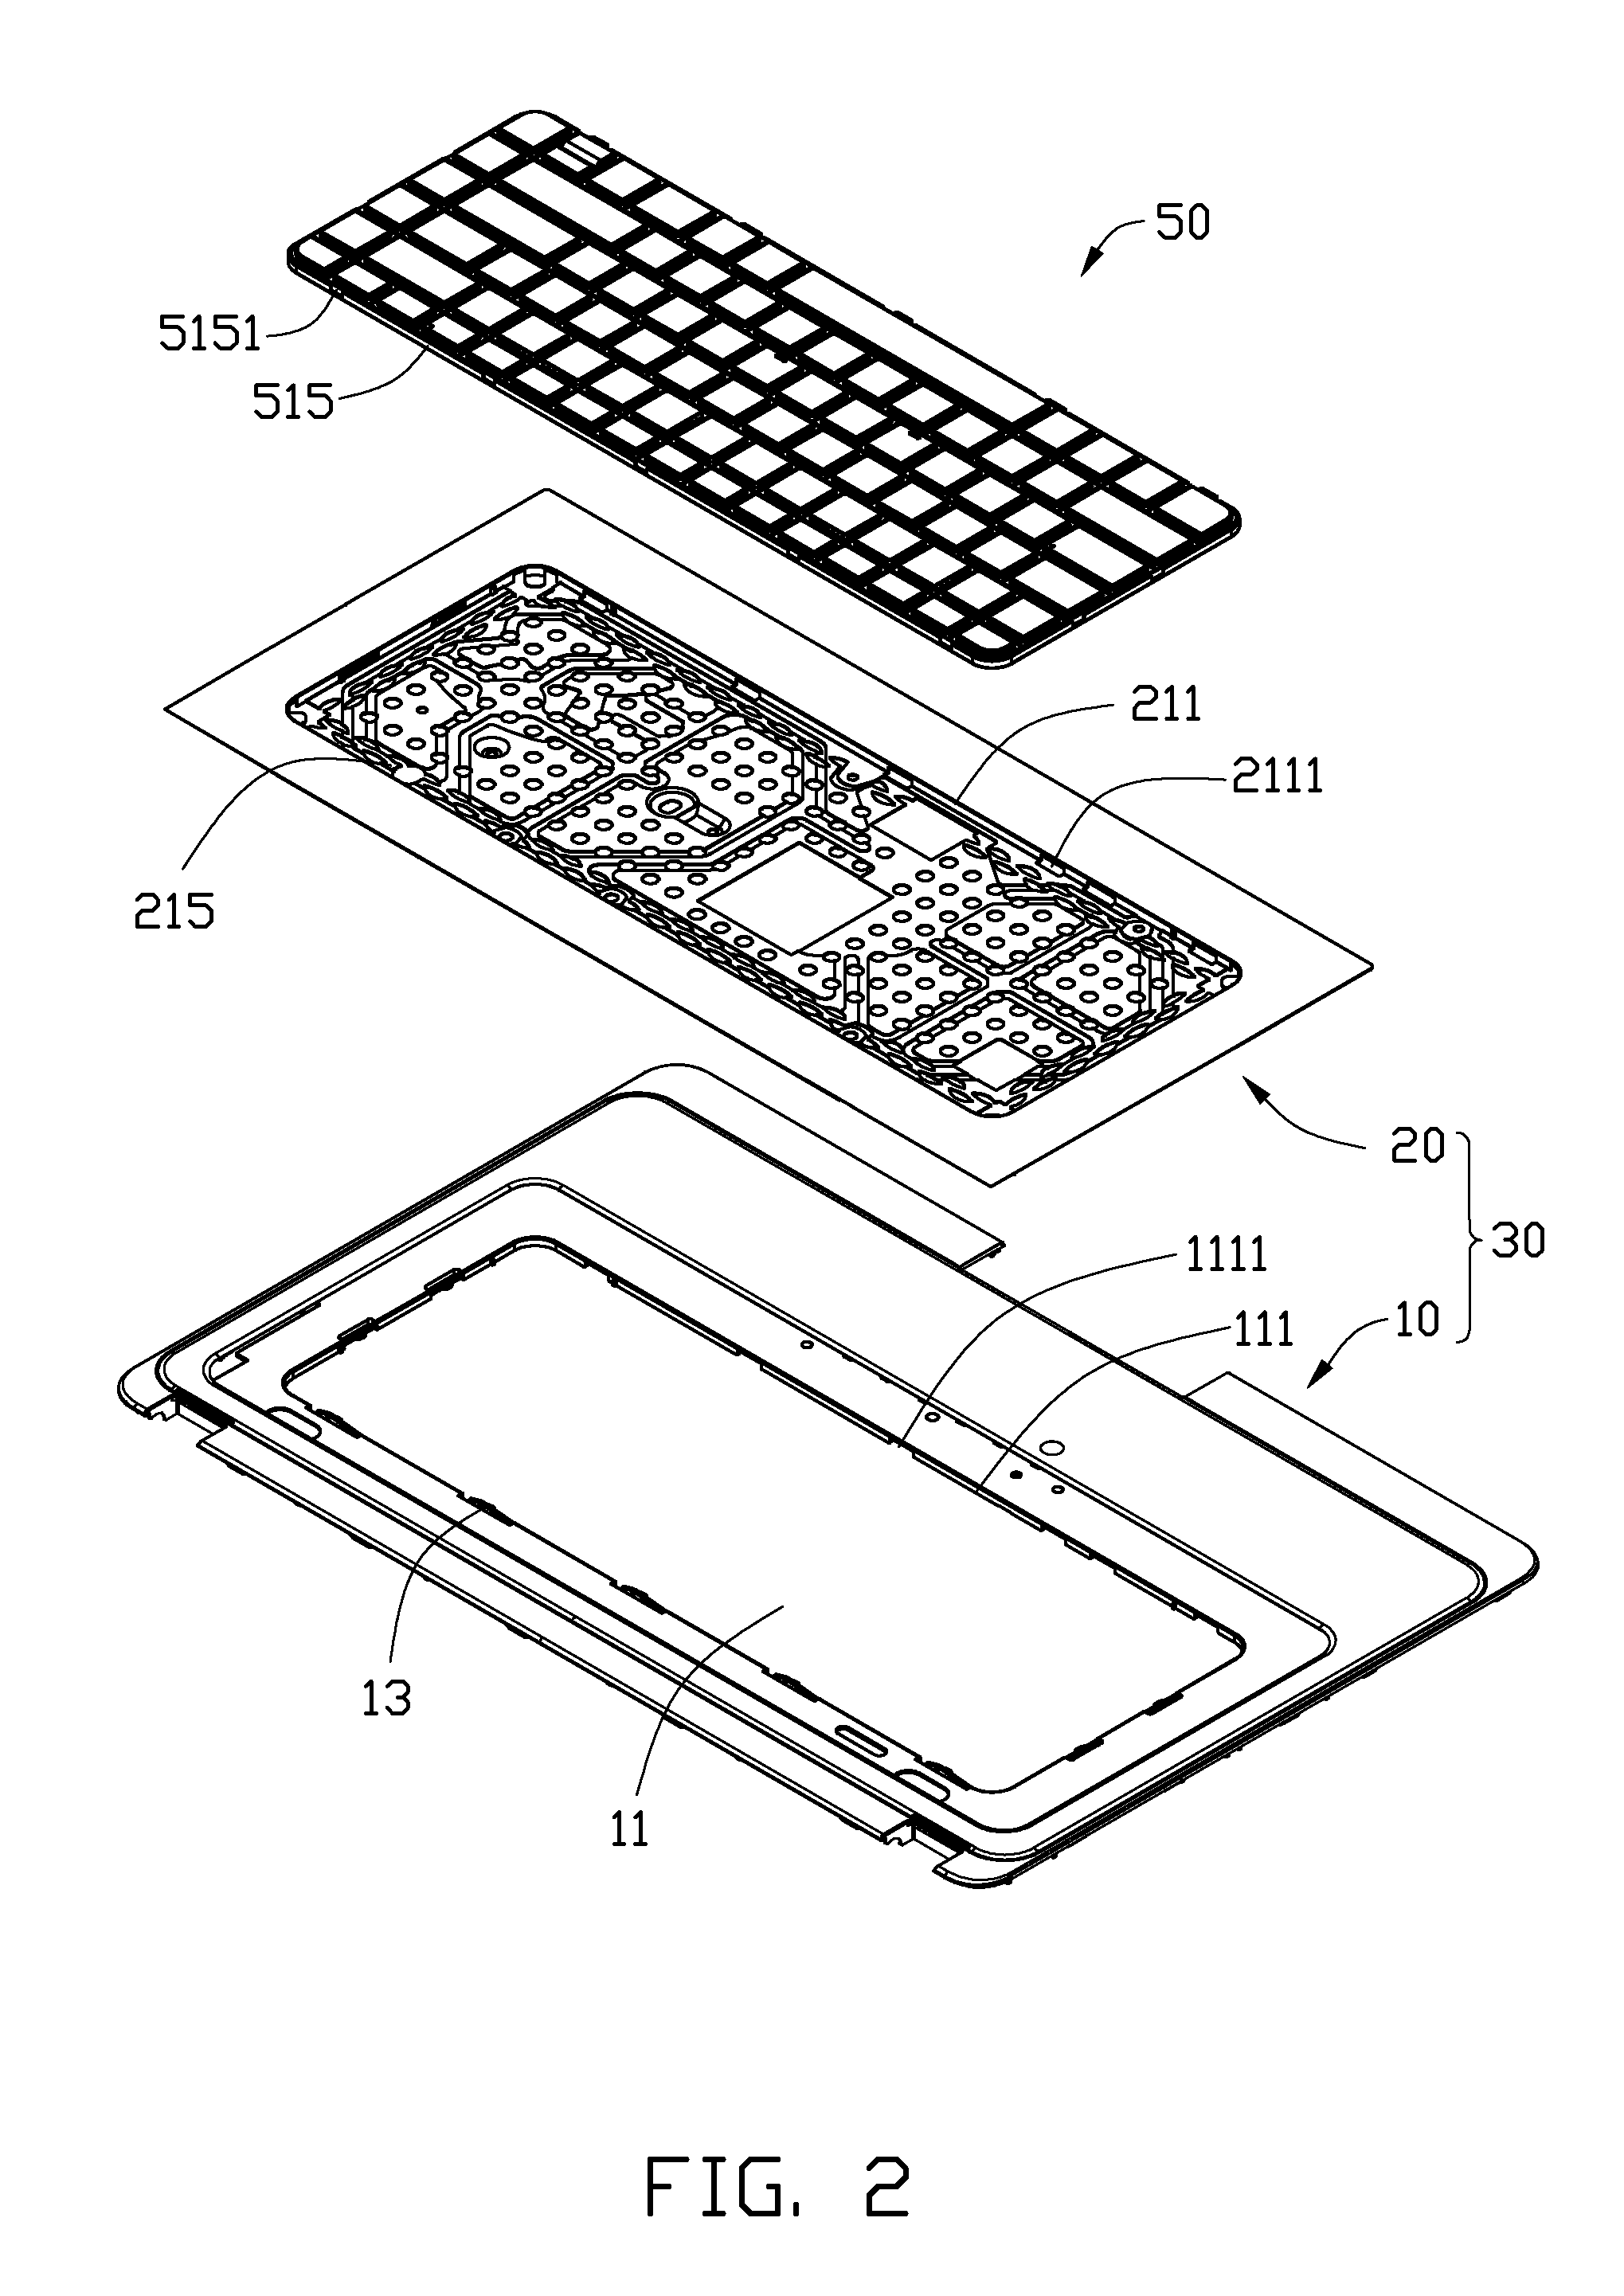 Keyboard mounting apparatus